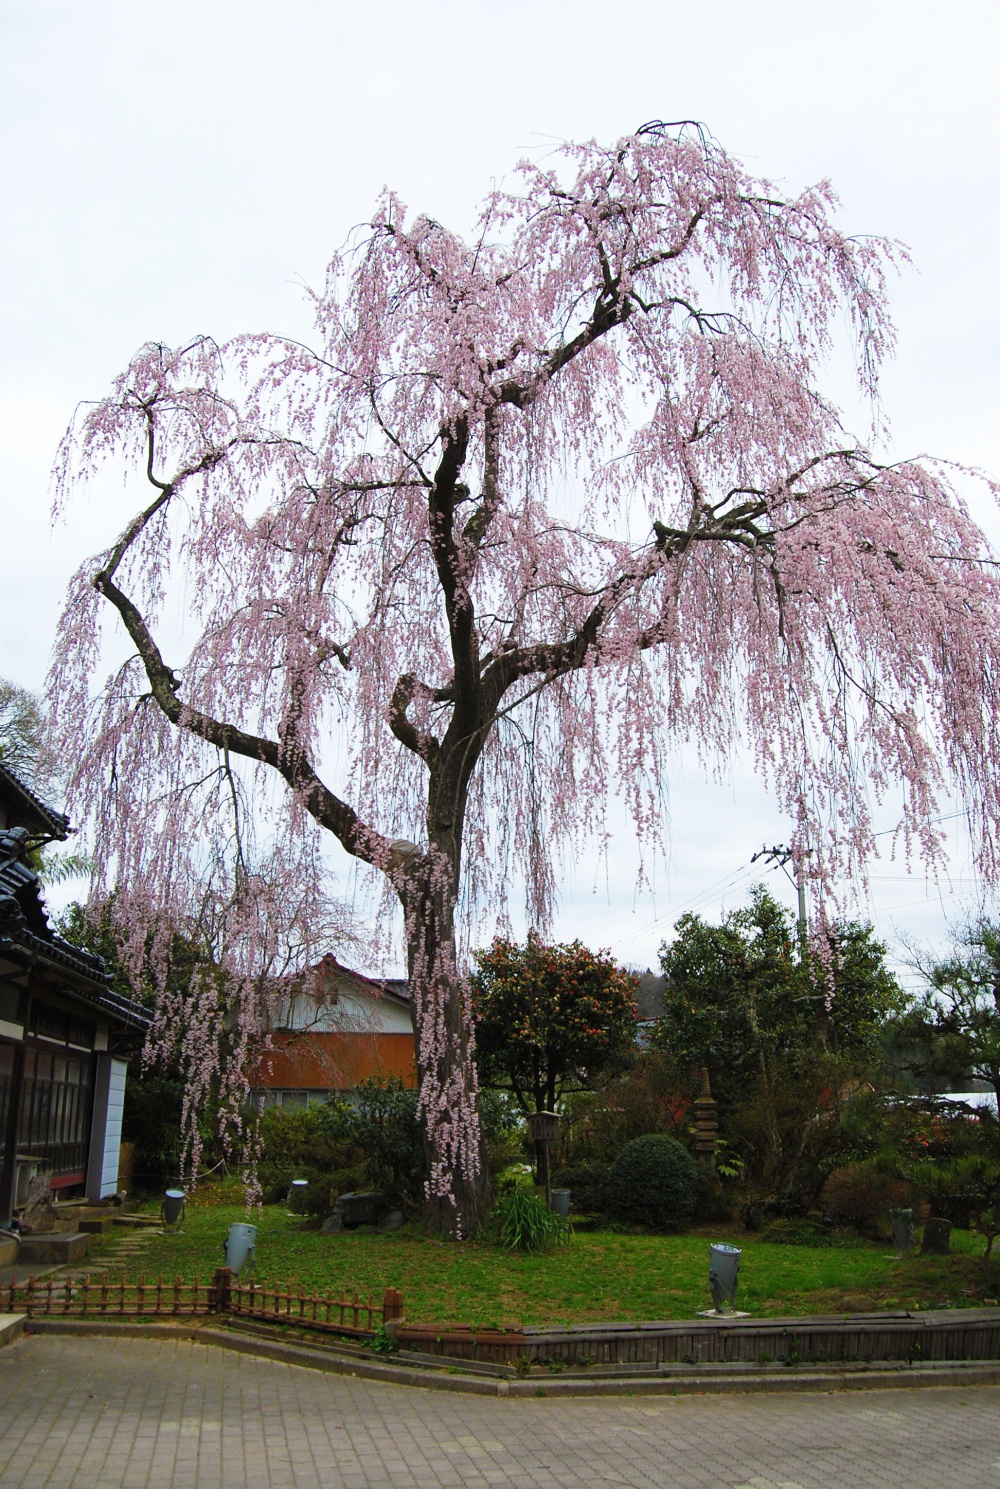 花見 桜が降り注ぐような見事な咲きっぷり かほく市 喜多家のしだれ桜 いいじ金沢